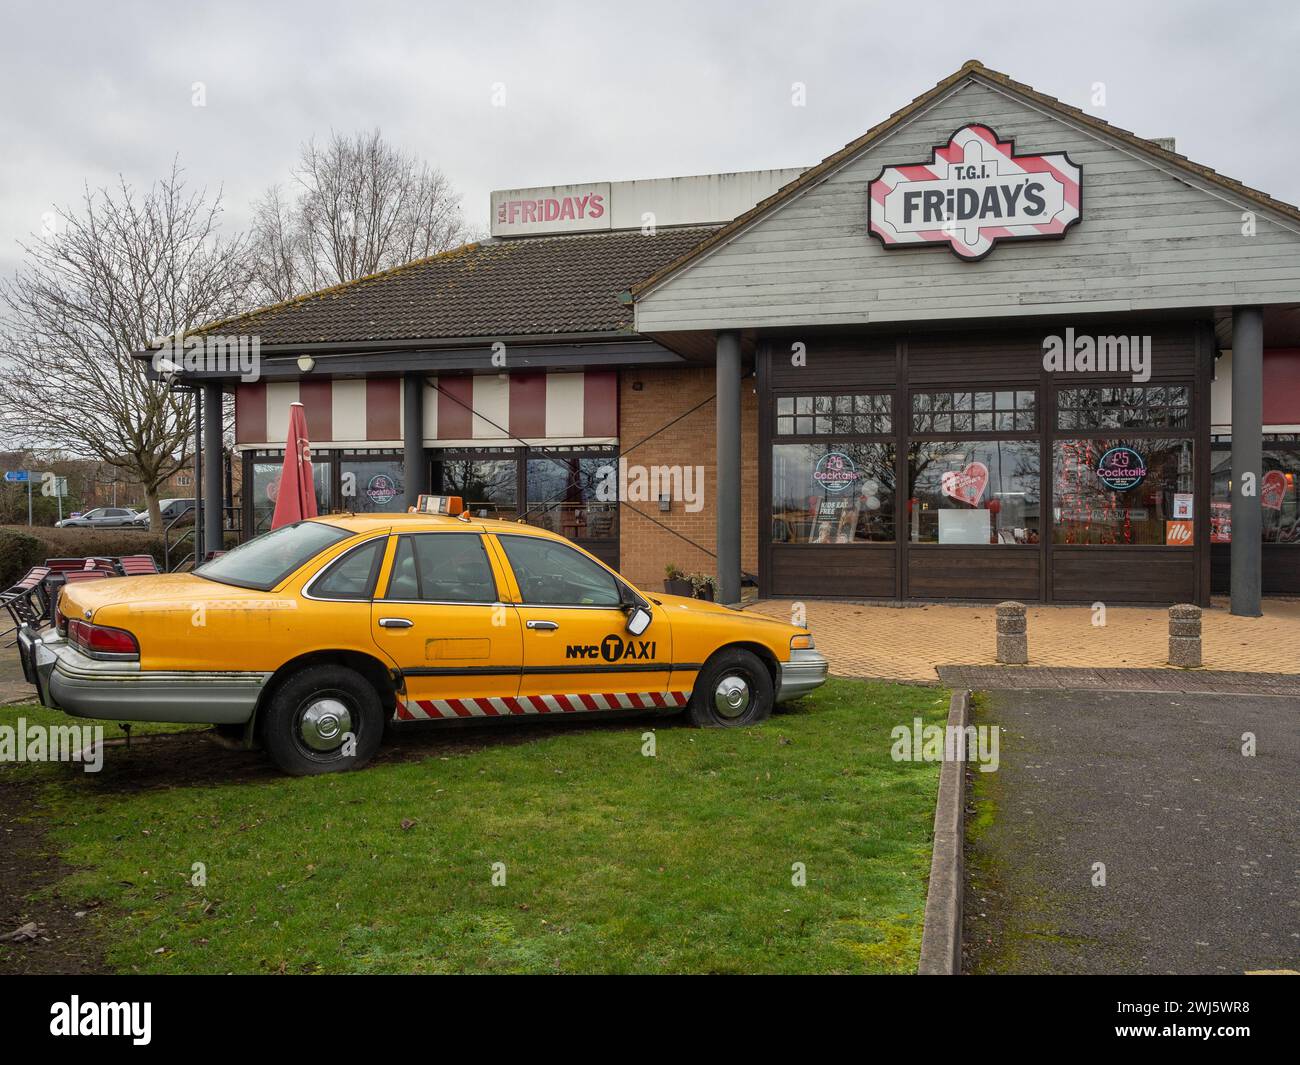 Façade de TGI Fridays, un restaurant à thème américain, Sixfields, Northampton, Royaume-Uni ; avec un taxi américain jaune à l'extérieur Banque D'Images